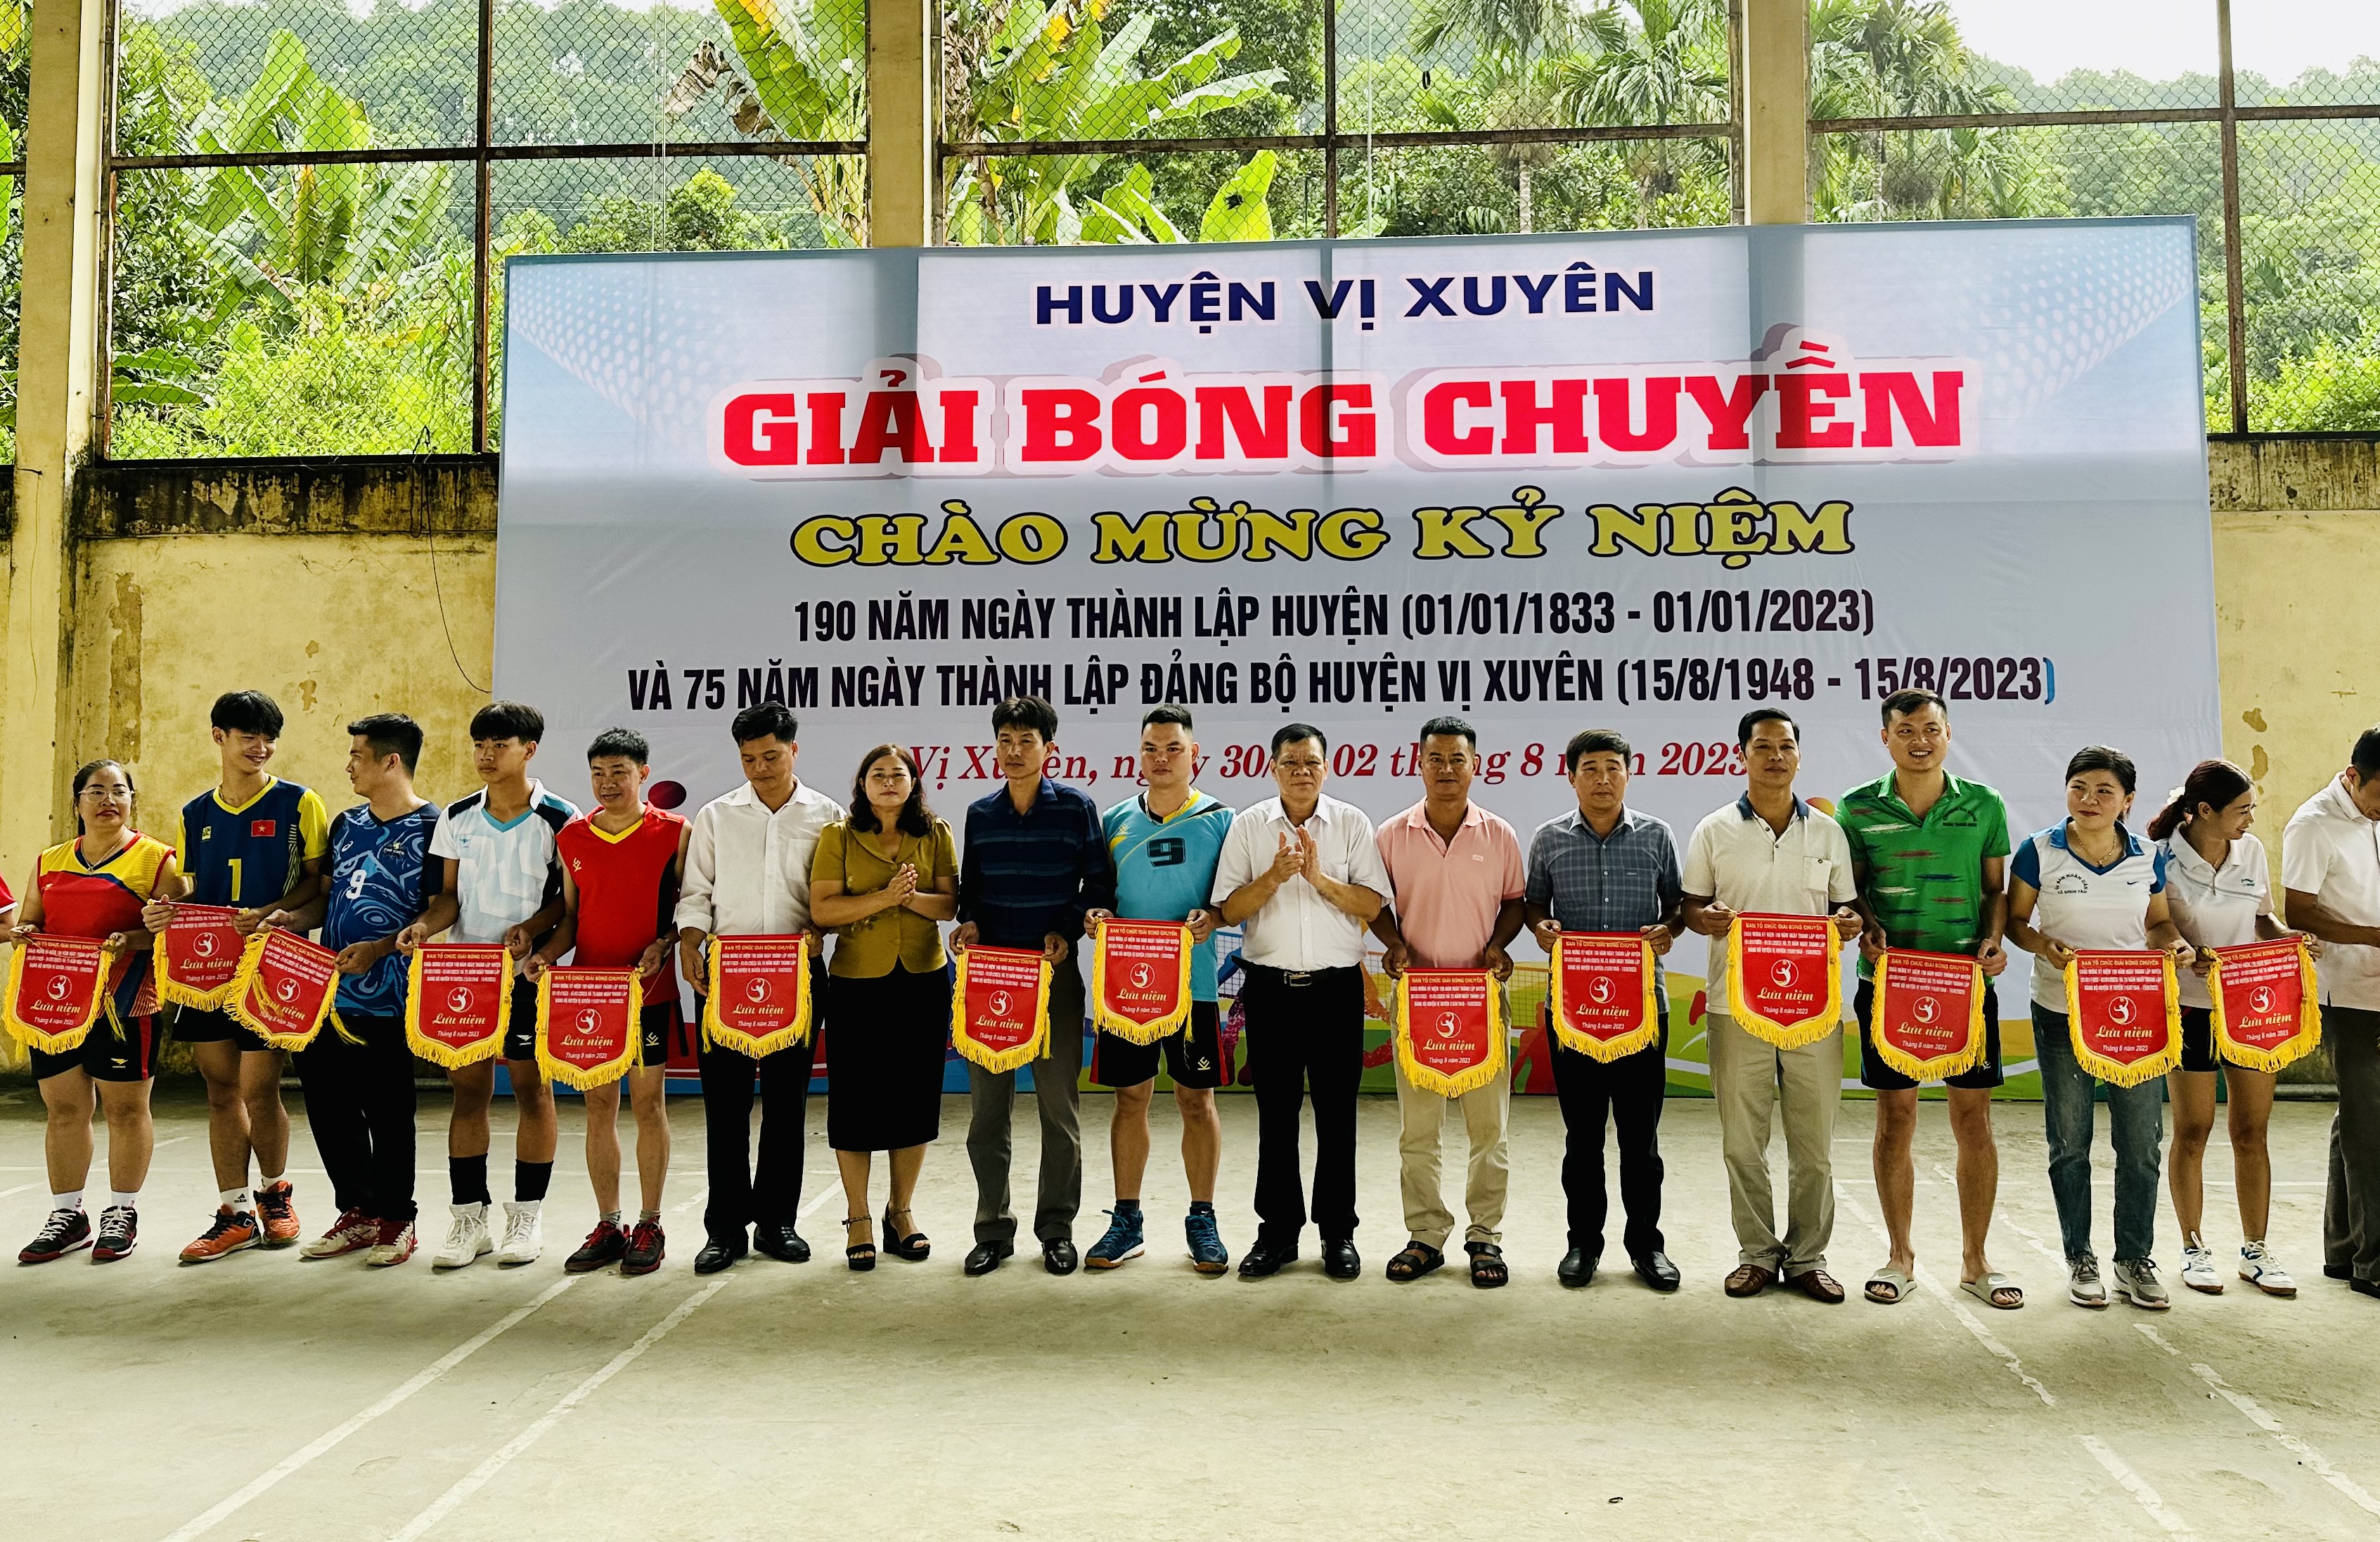 Giải bóng chuyền chào mừng ngày thành lập huyện Vị Xuyên